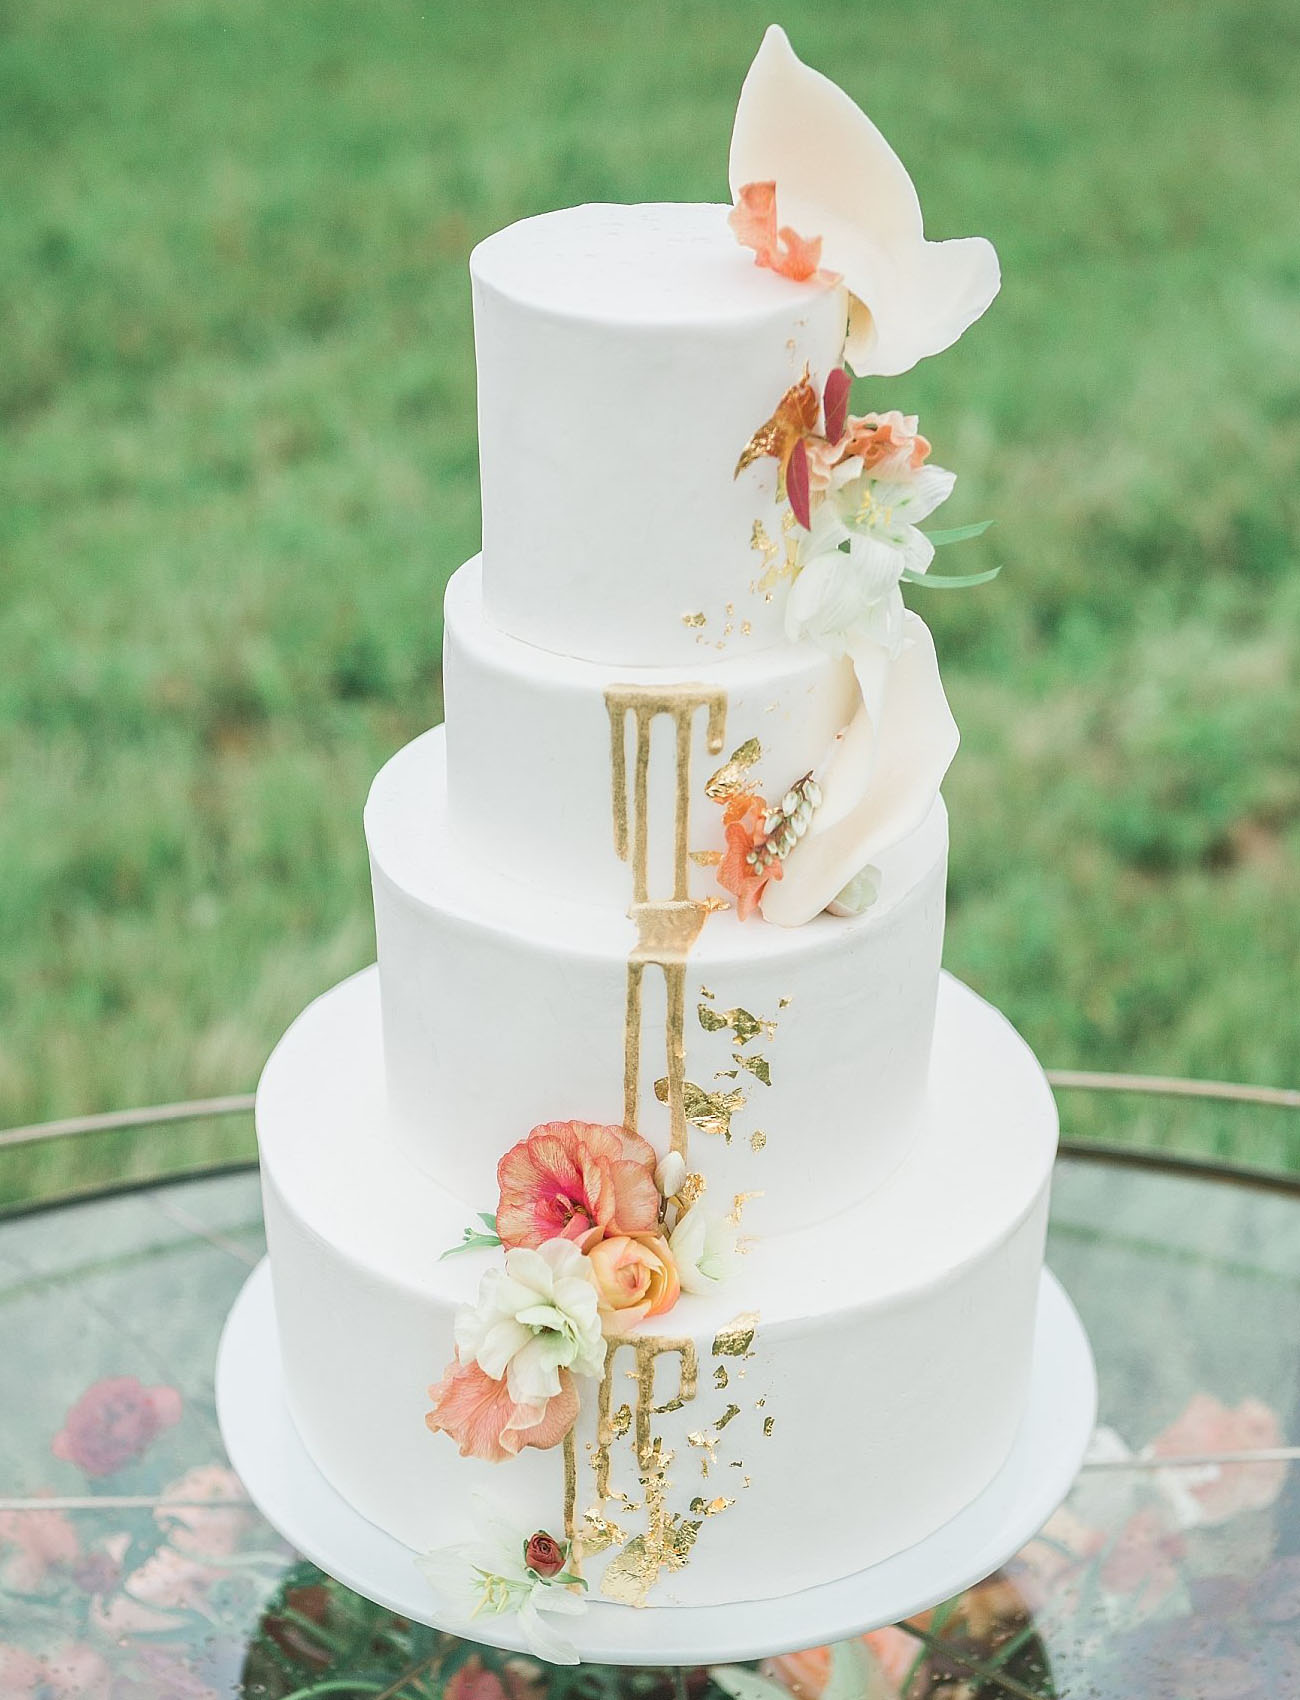 Inspiração para estilo Drip Cake clássico em bolos de casamento de 3 andares | Créditos: Christy McCarter Photography